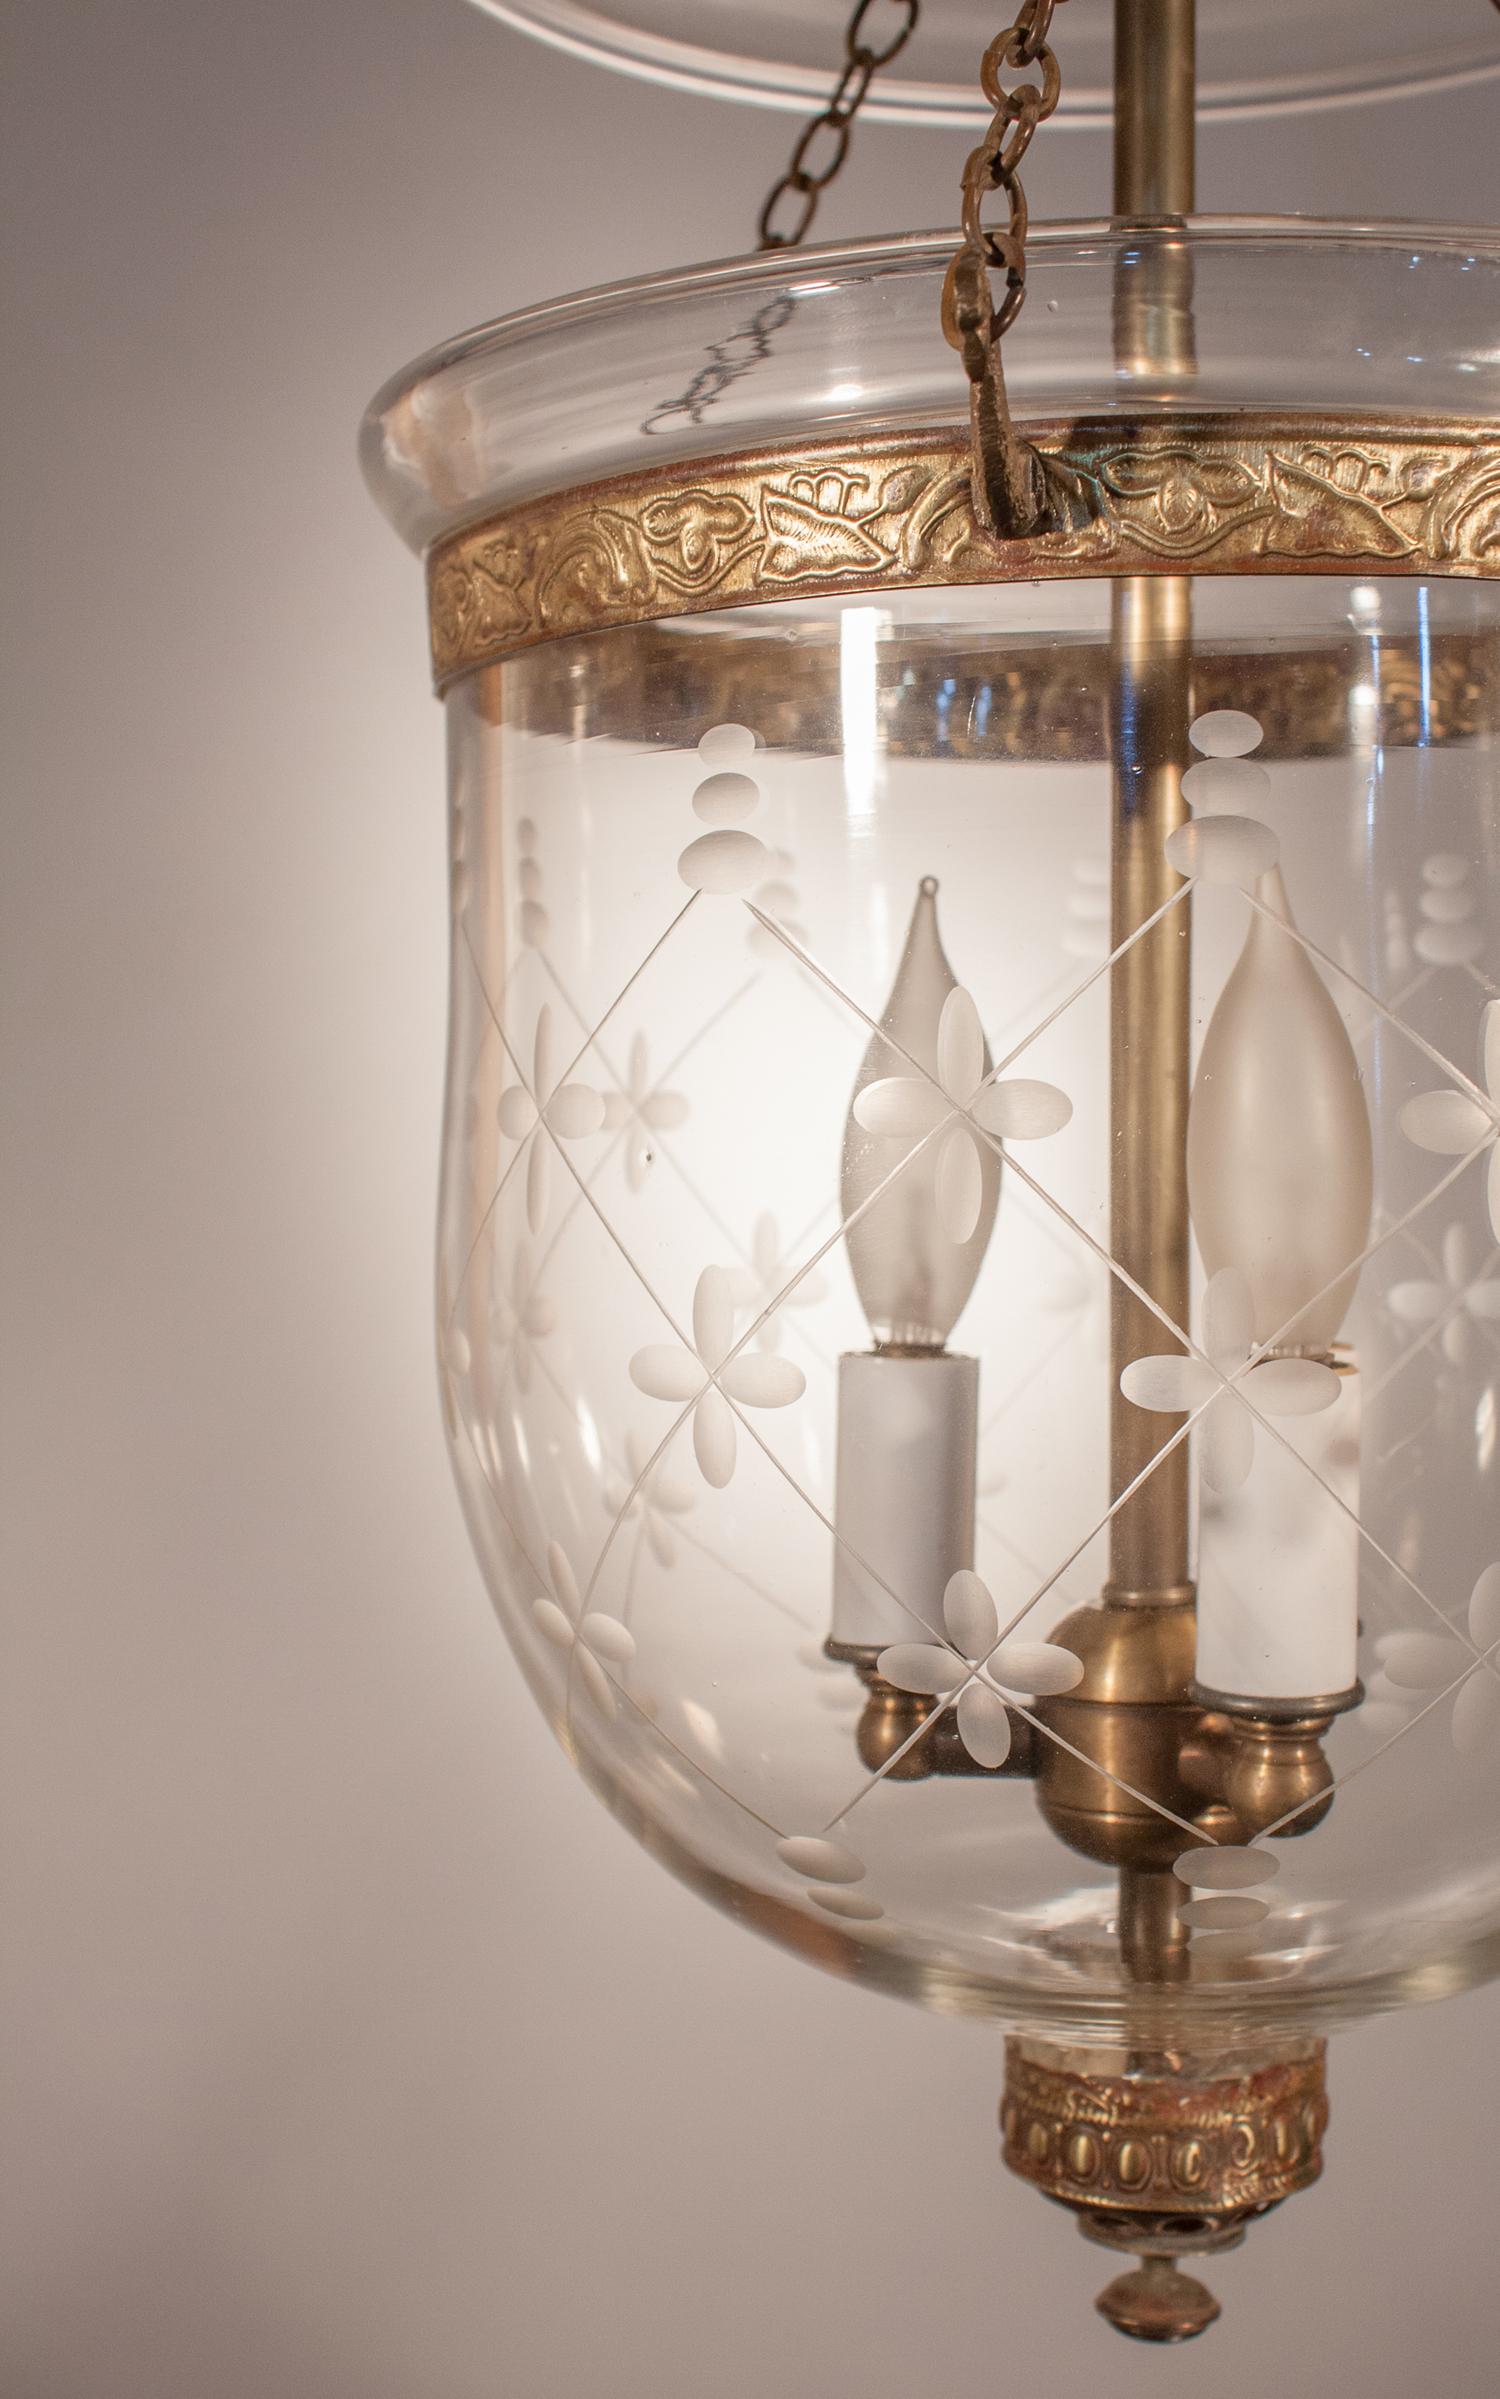 Antique Bell Jar Lantern with Trellis Etching (Unbekannt)